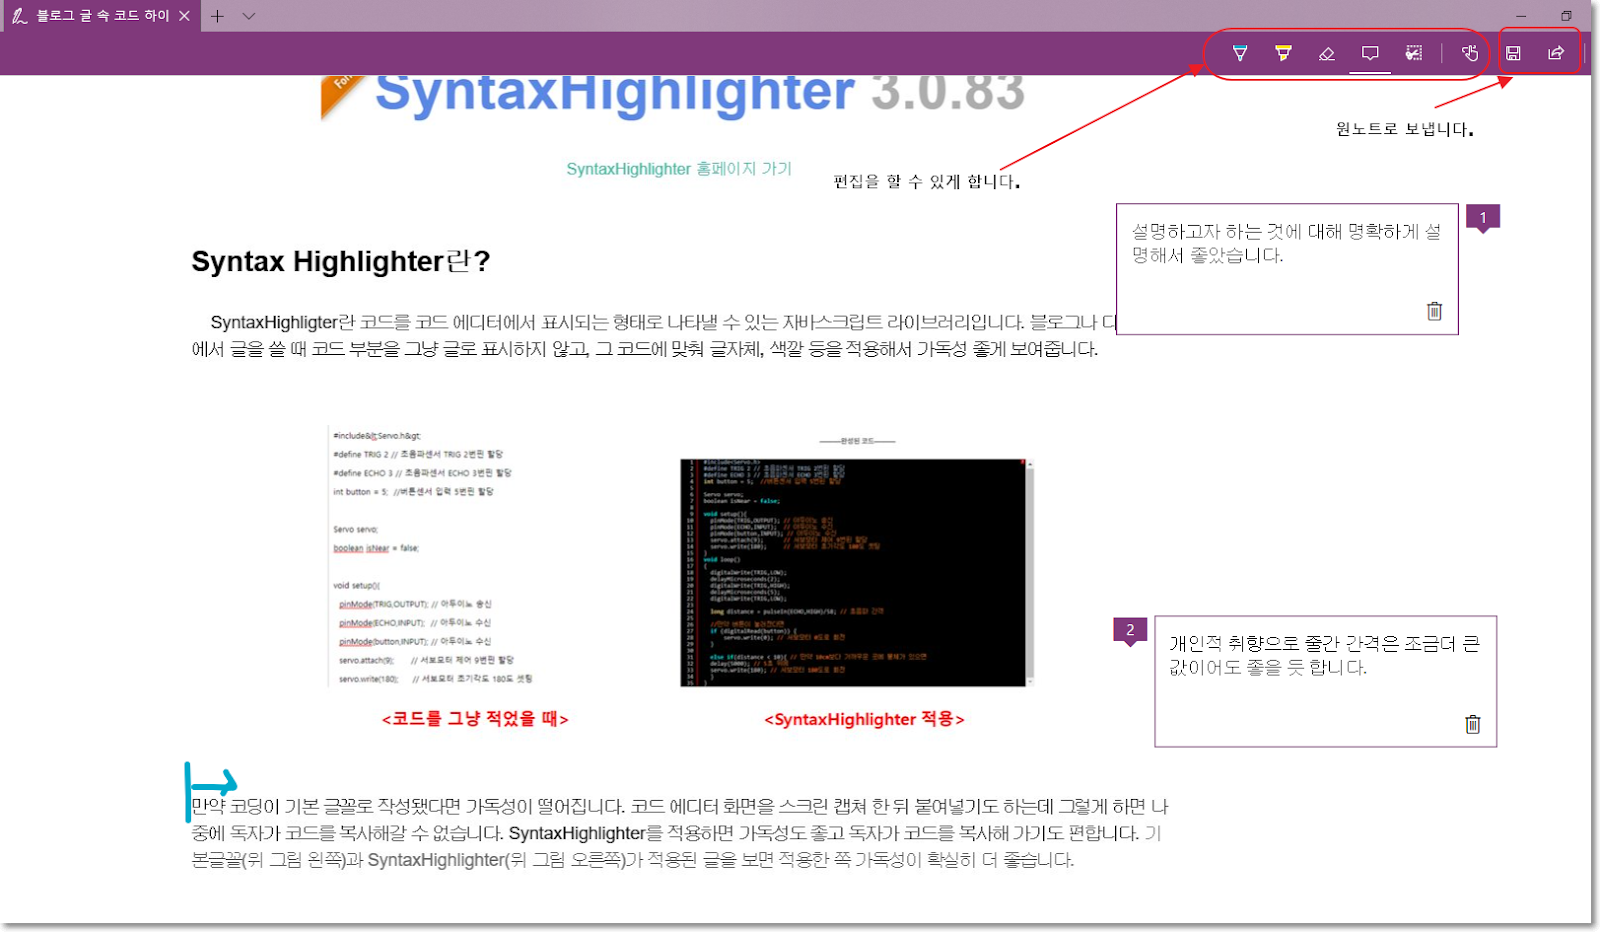 7~ 들로그 글 속 코드 하이 )( 
十 
syntaxHIgnIIgnter ö.U.öö 
SyntaxHighlighter 흘目|이F.| 가기 
편짙을 할 수 있세 합니다. 
Syntax Highlighter란? 
SyntaxHighligtere-k 코드를 코드 에二IEH에)`혁 로되되는 나크卜그* 수 크는 卜스크립트 라이브러리입니다. 들로그나 
에서 
쓰 때 코드 부분을 그냥 글로 표되하지 않고 그 코드에 맞풔 글자체, 적갈 등을 적용하서 가독성 좋게 보여줍니다. 
V 
O 
口 
원노트로 보탭니다. 
- ECHO 1 1,, =콤*鏖서 
<코드를 그냥 적었을 때〉 
섴밓El구지 히: 대해 믿딬El게 섴 
명해서 좋앗습니다l 
개 인적 취향으로 줄간 간격은 조금더 큰 
값이어도 좋을 듯 합니 다. 
<SyntaxHighlighter 적 용 > 
만약 코딩이 기본 글꼴로 작성왰다년 가독성이 떨어집니다. 크三 결二Ⅰ구 화현을 스크틴 걸쳐 한-틱 들여닣1기도 하는데 그렇게 하편 나 
중에 독자가 코드를 독사하갈 수 없습니다. SyntaxHighlighterä 국듣?卜견 가득•넣三 좋고 독자가 코드를 독사하 가기도 편합니다. 기 
본글긬뮈 그림 왼쪽)과 SyntaxHighlighter(S-l 그림 오른쪽)가 국역-들된 글을 보편 적용한 쪽 가독성이 획卜실言| 더 좋습니다. 